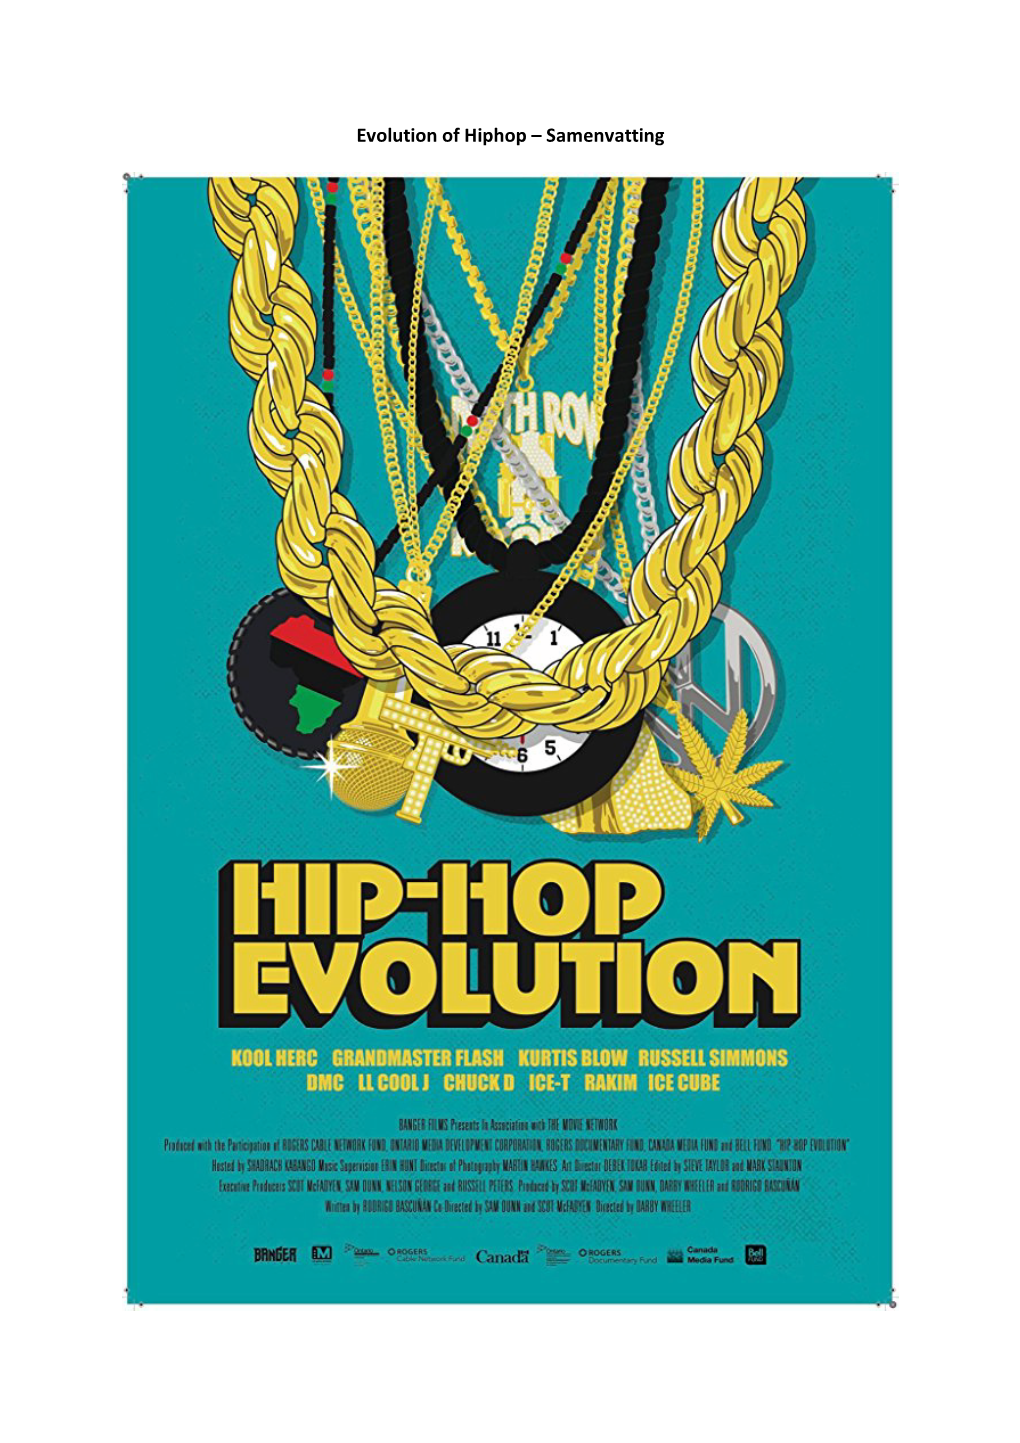 Evolution of Hiphop – Samenvatting